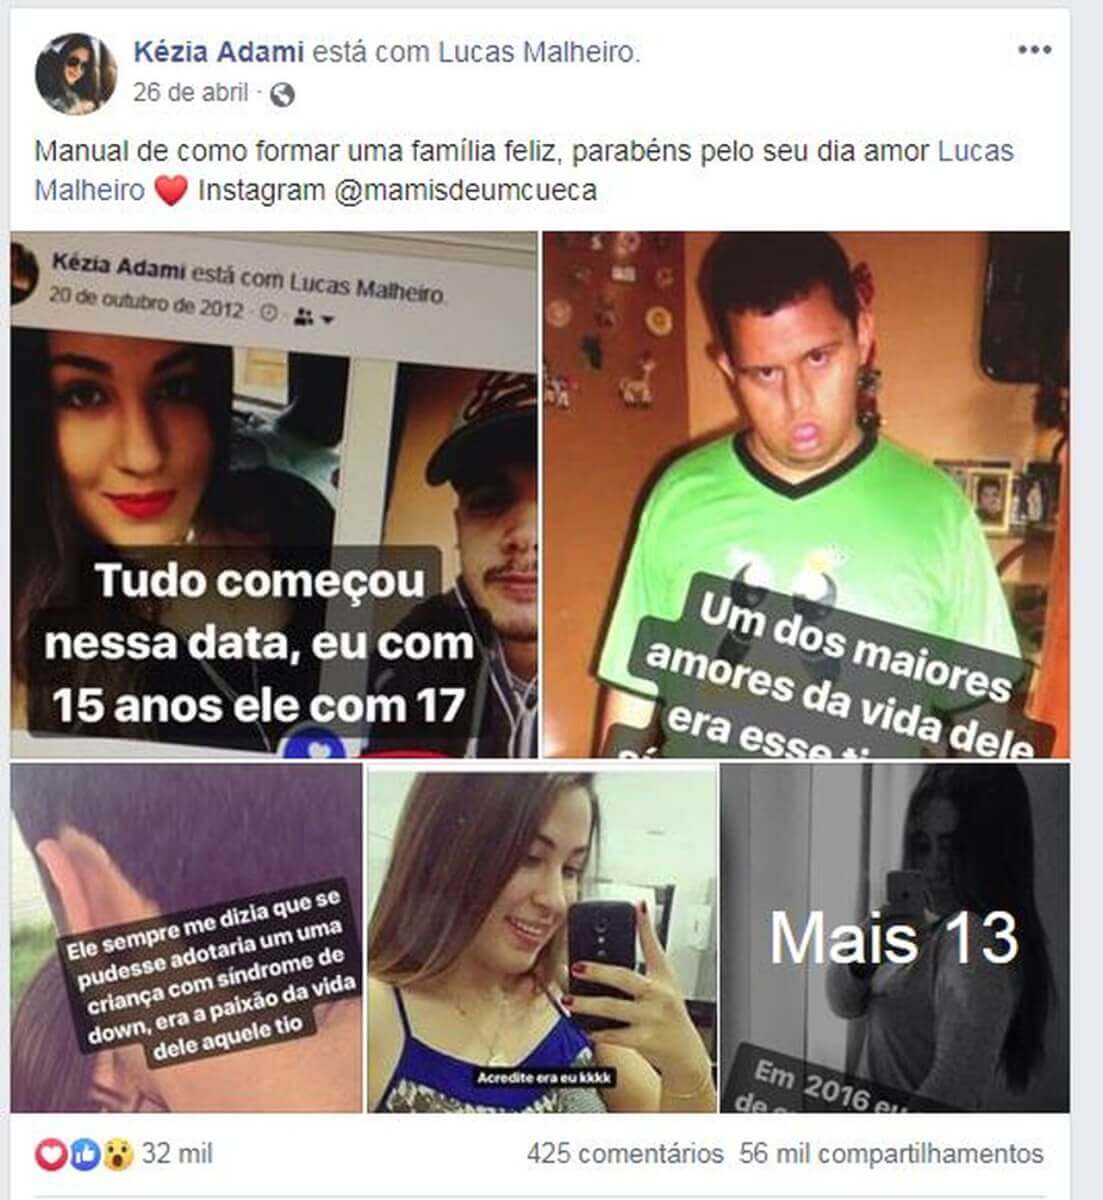 revistapazes.com - Jovem faz declaração para namorado que assumiu filho dela com Down e causa comoção na web